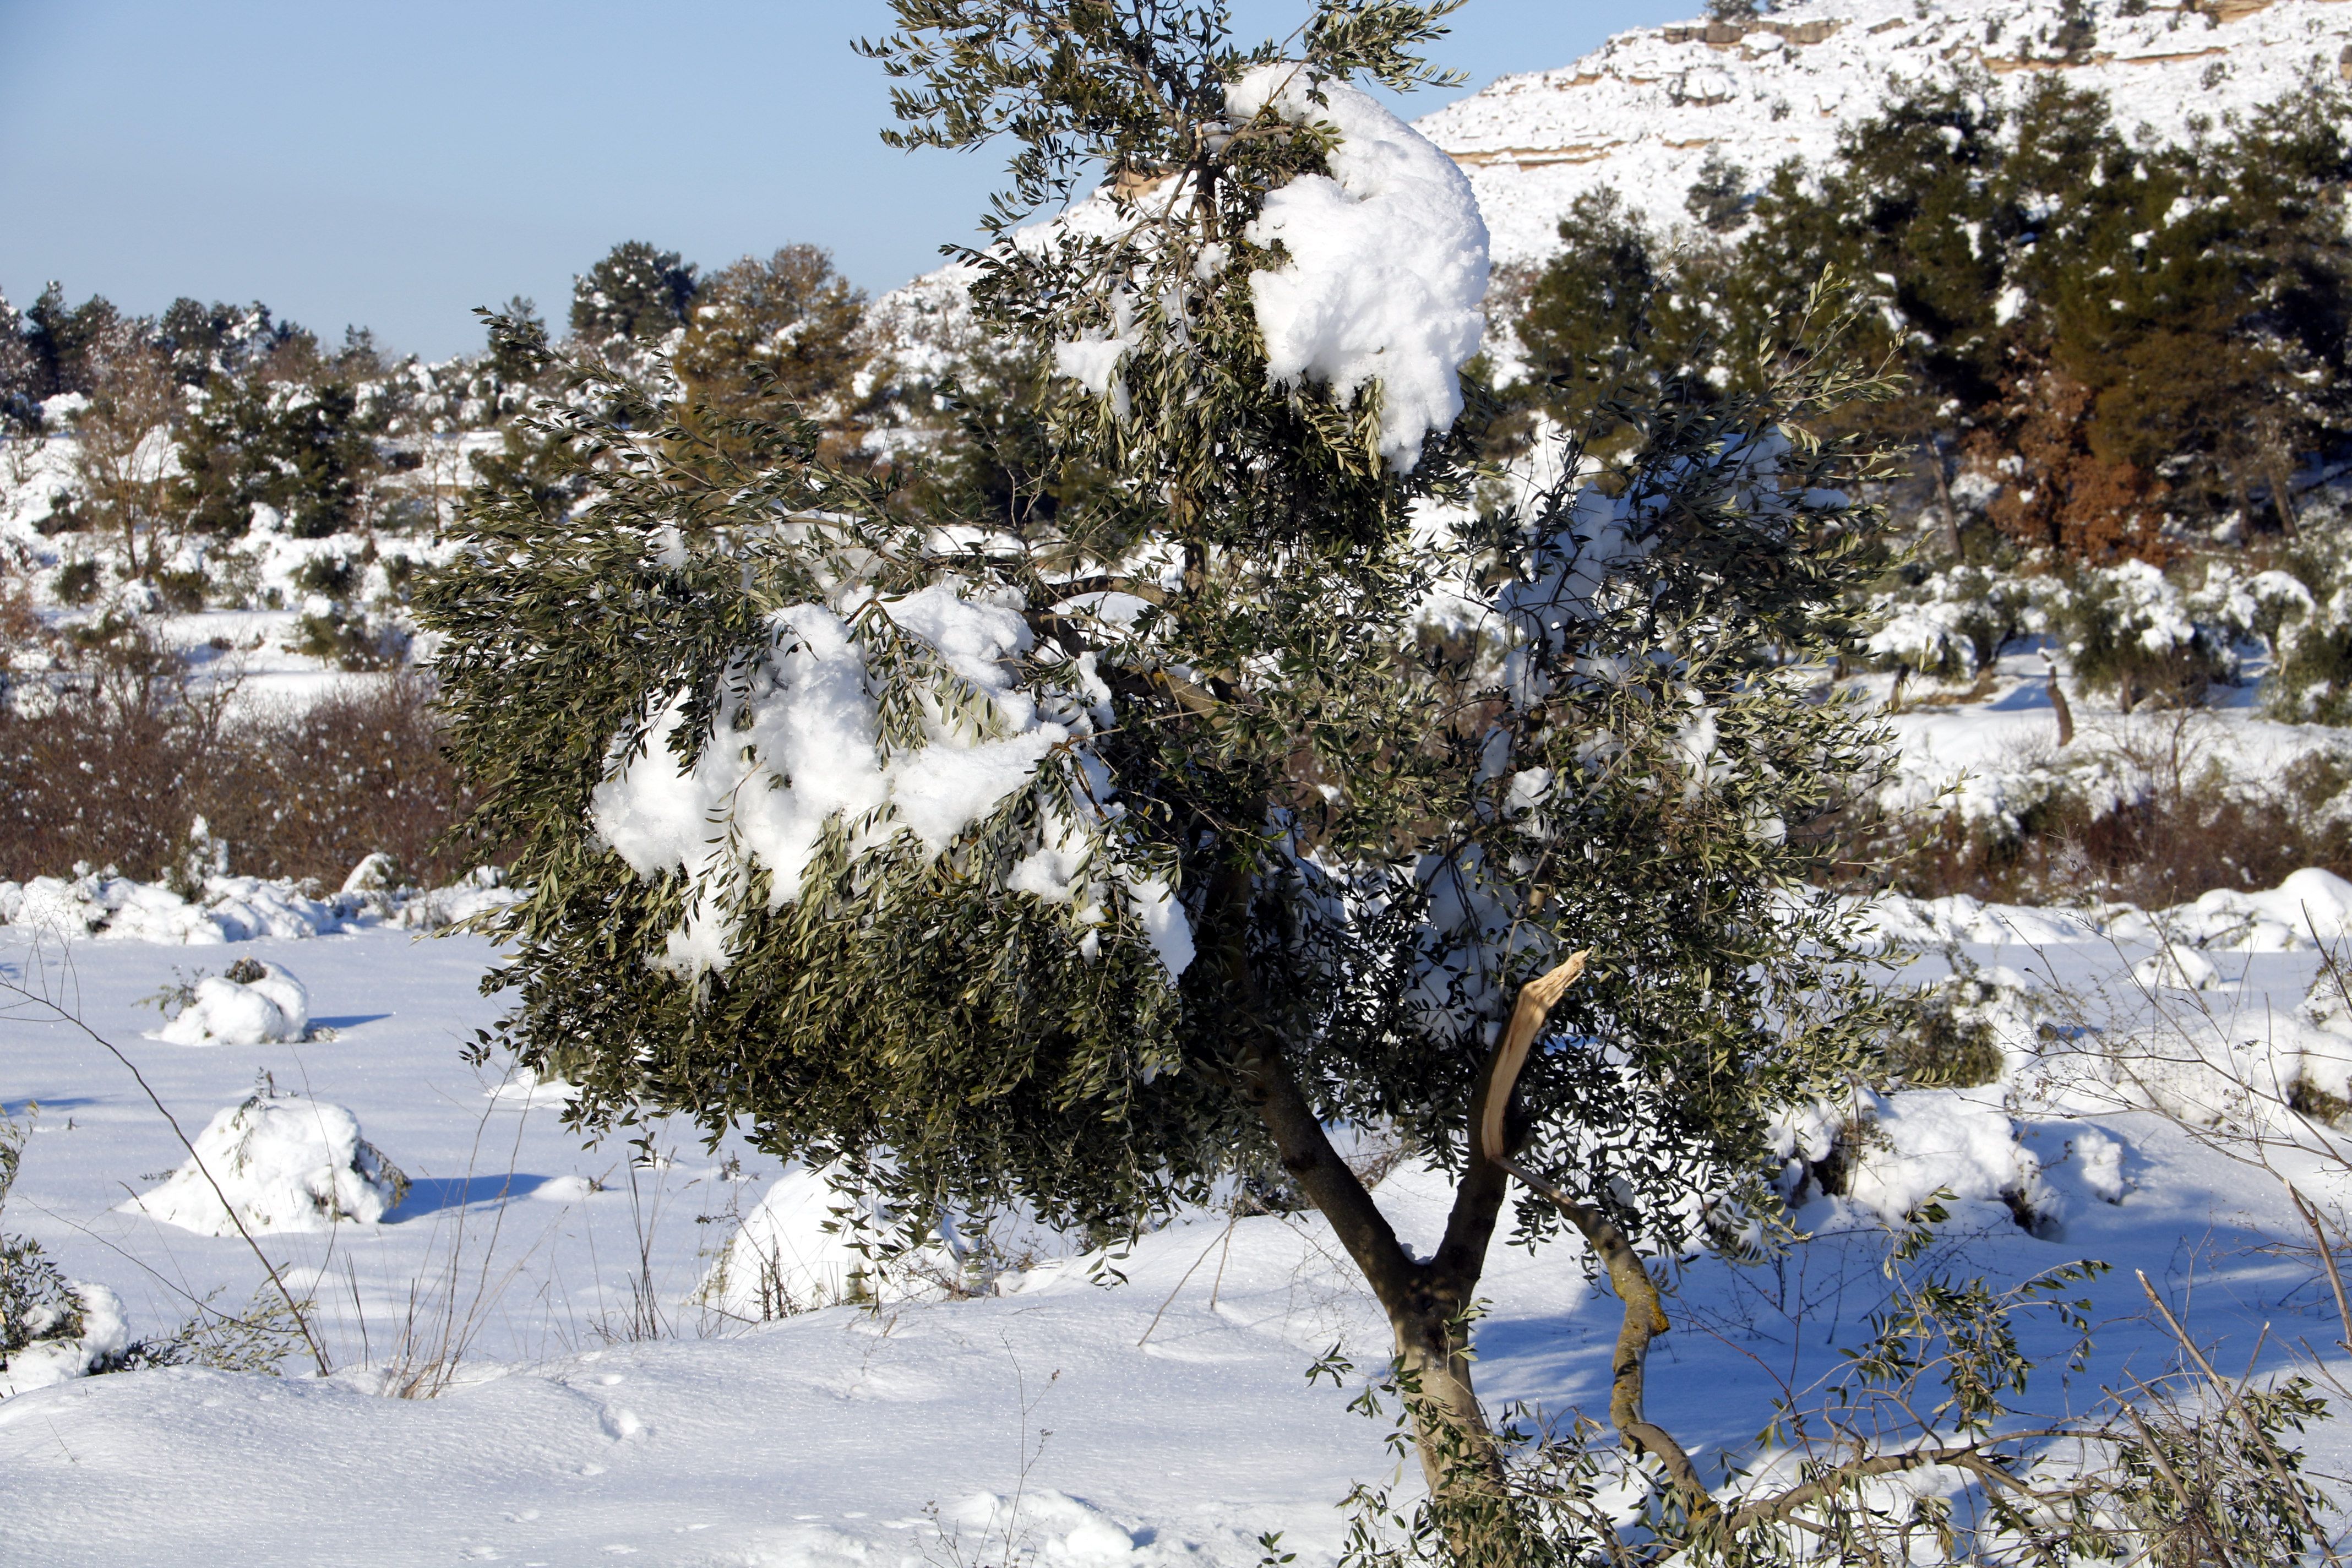 Peligran los olivos miedo la nieve y el frío, Vinaixa (Lleida) / Oriol Bosch_ACN